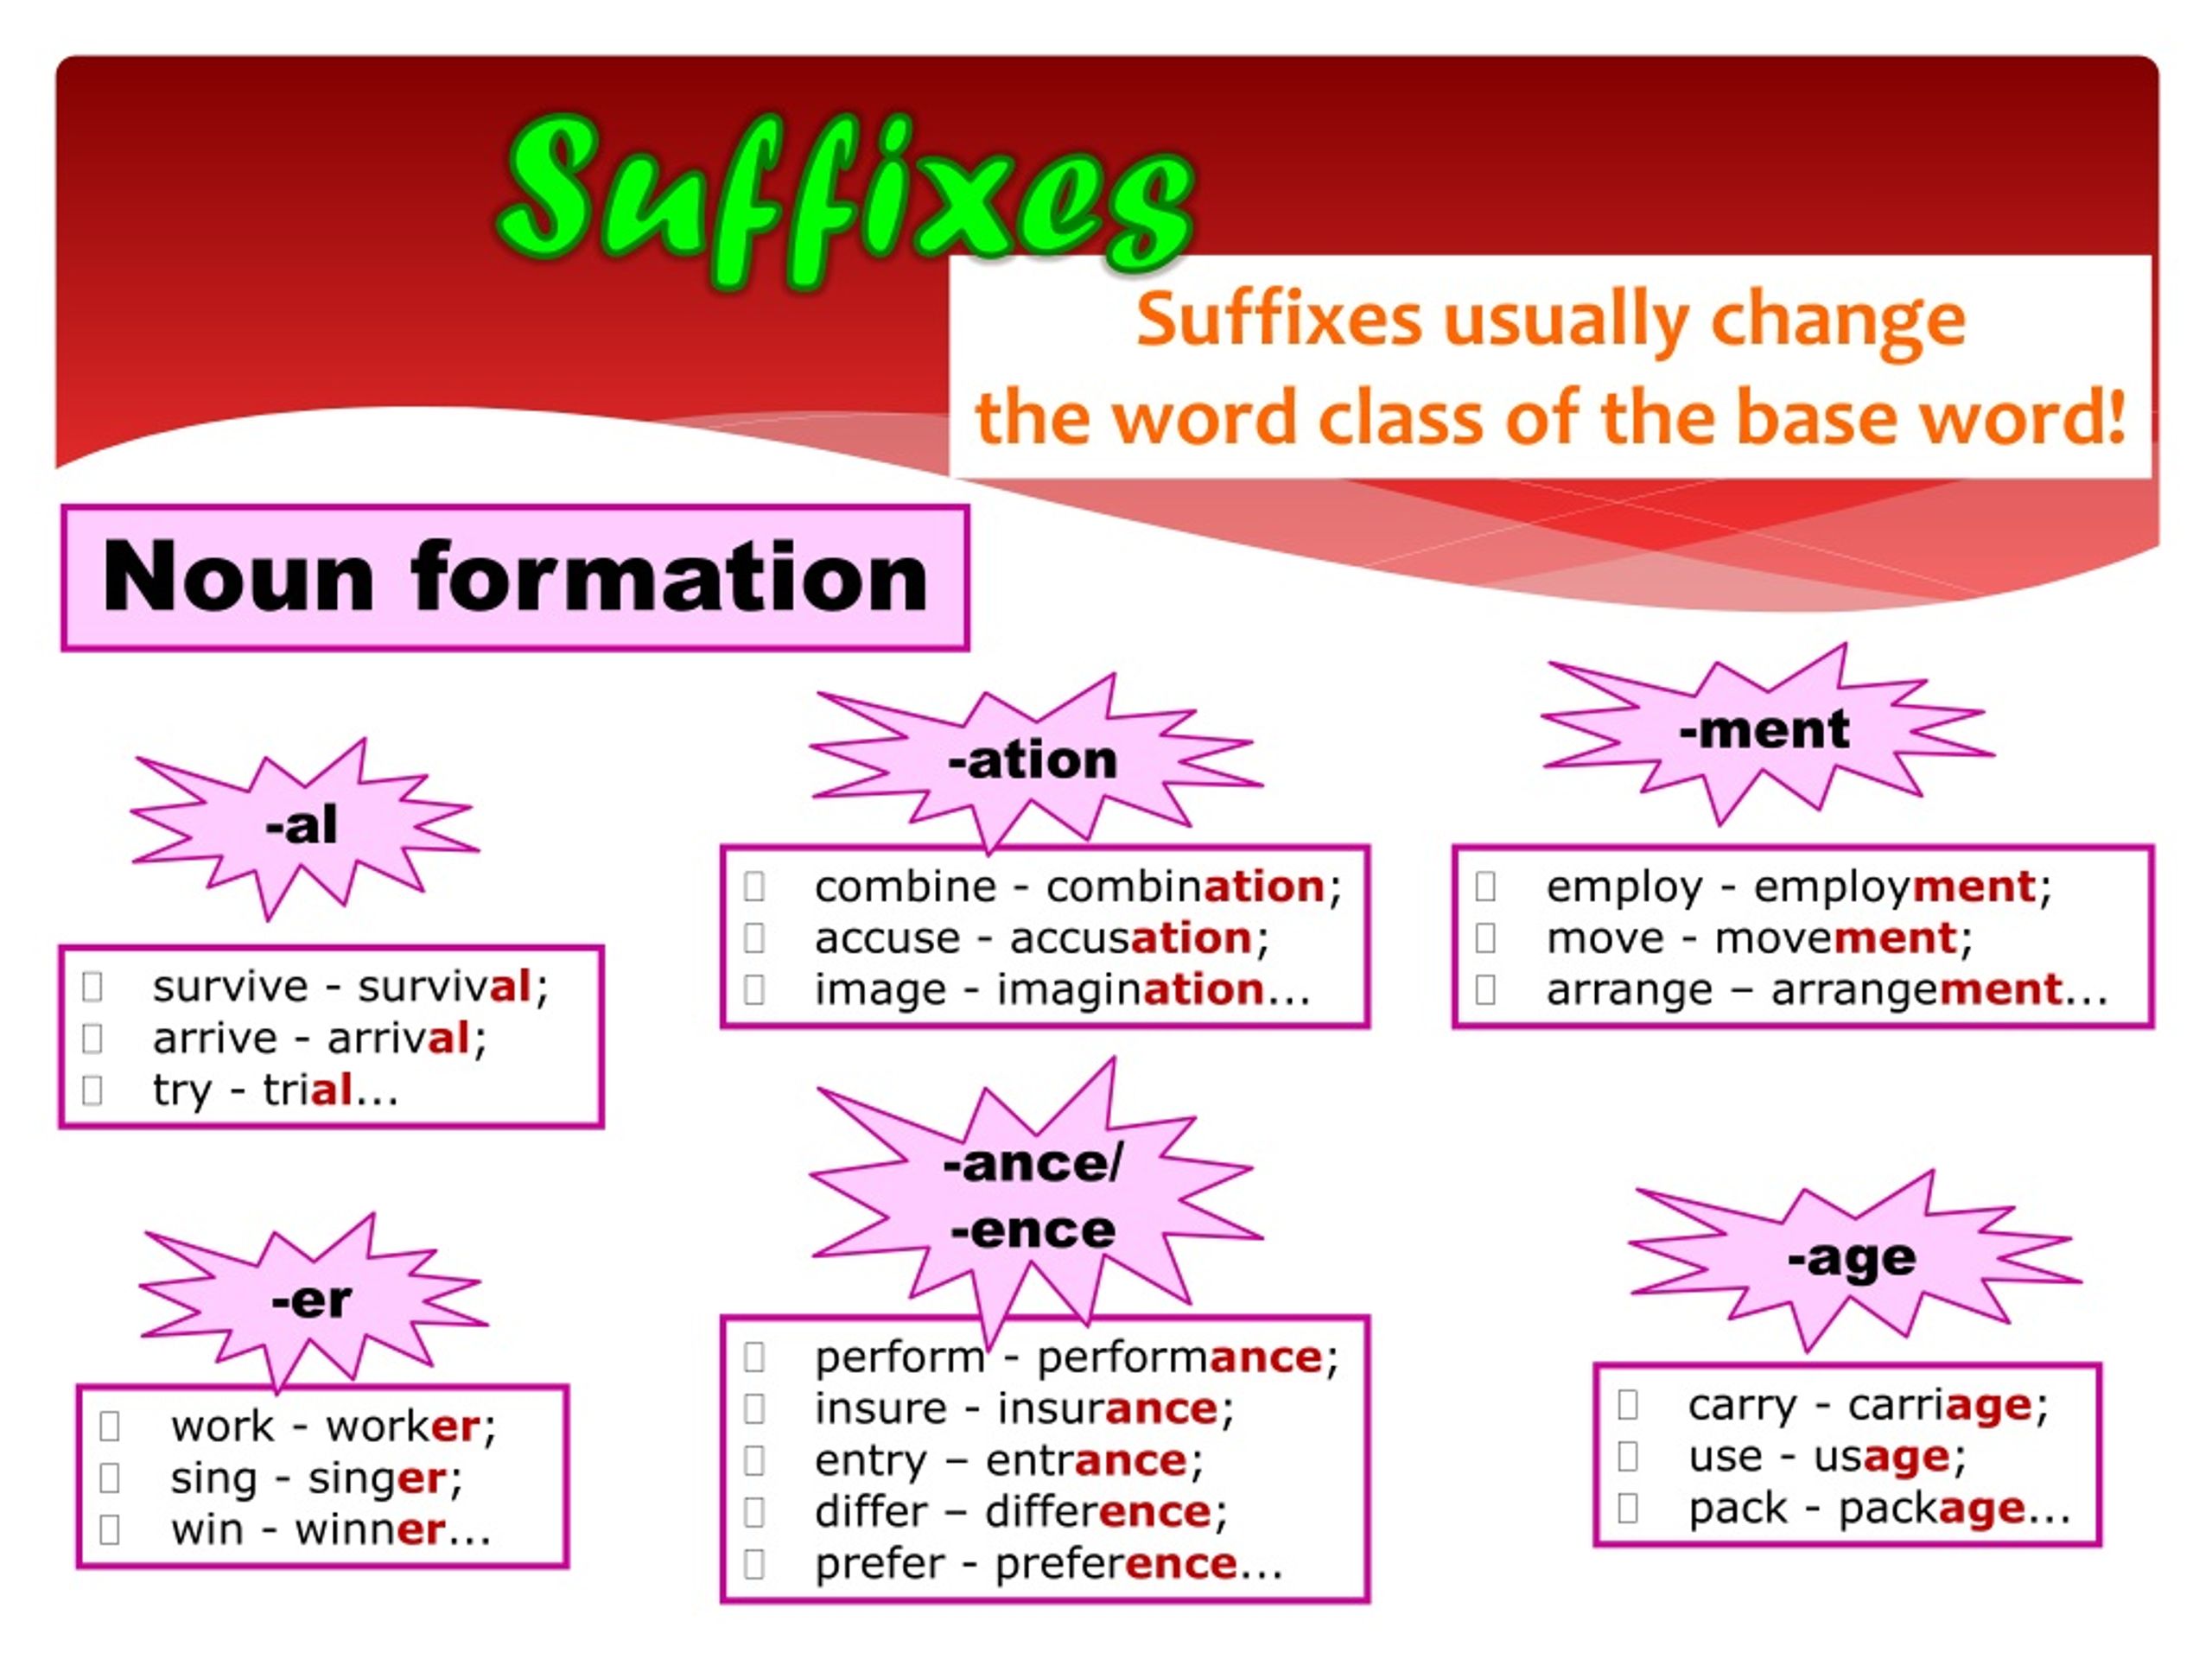 Word formation prefixes. Словообразование в английском. Суффиксы по английскому языку. Суффиксы словообразования в английском языке. English суффикс.